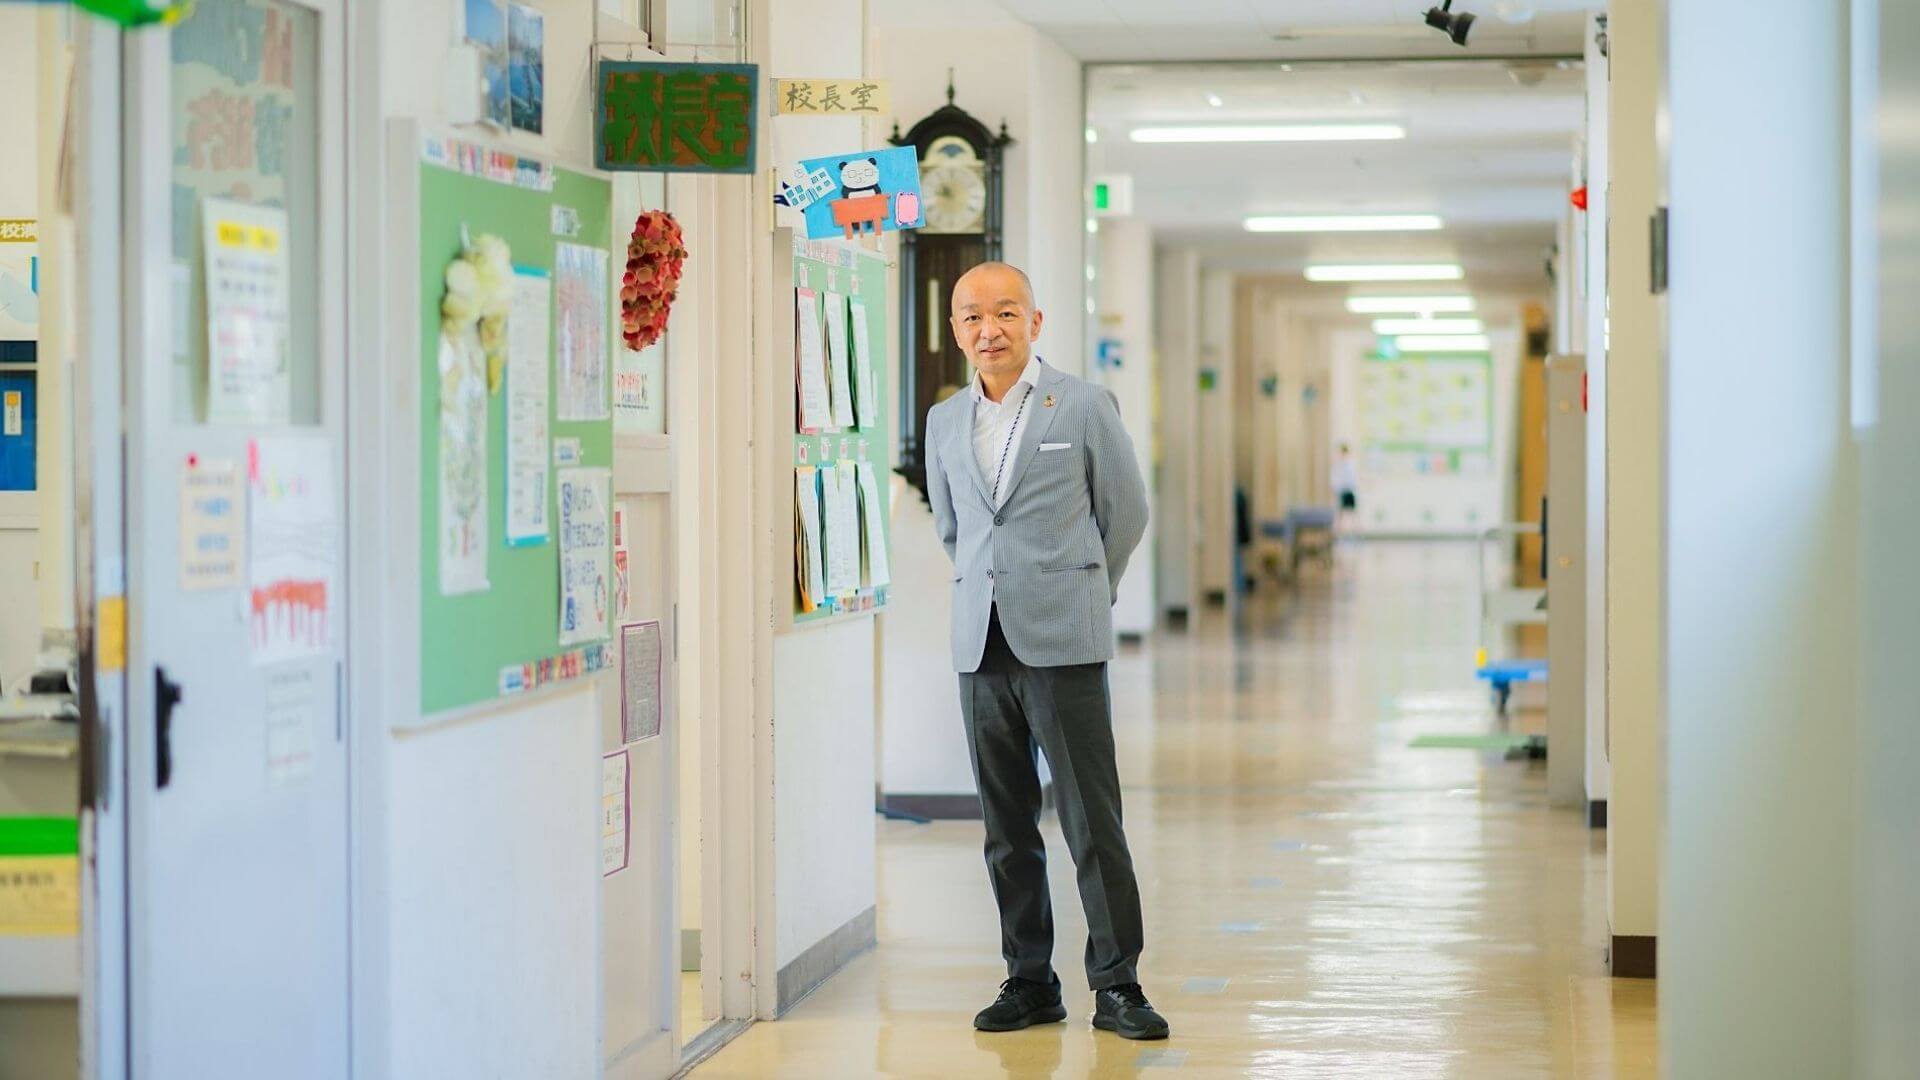 横浜市立山内小学校の共育・共創の学校づくりとは？子どもだけでなく、先生も「誰一人取り残さない」